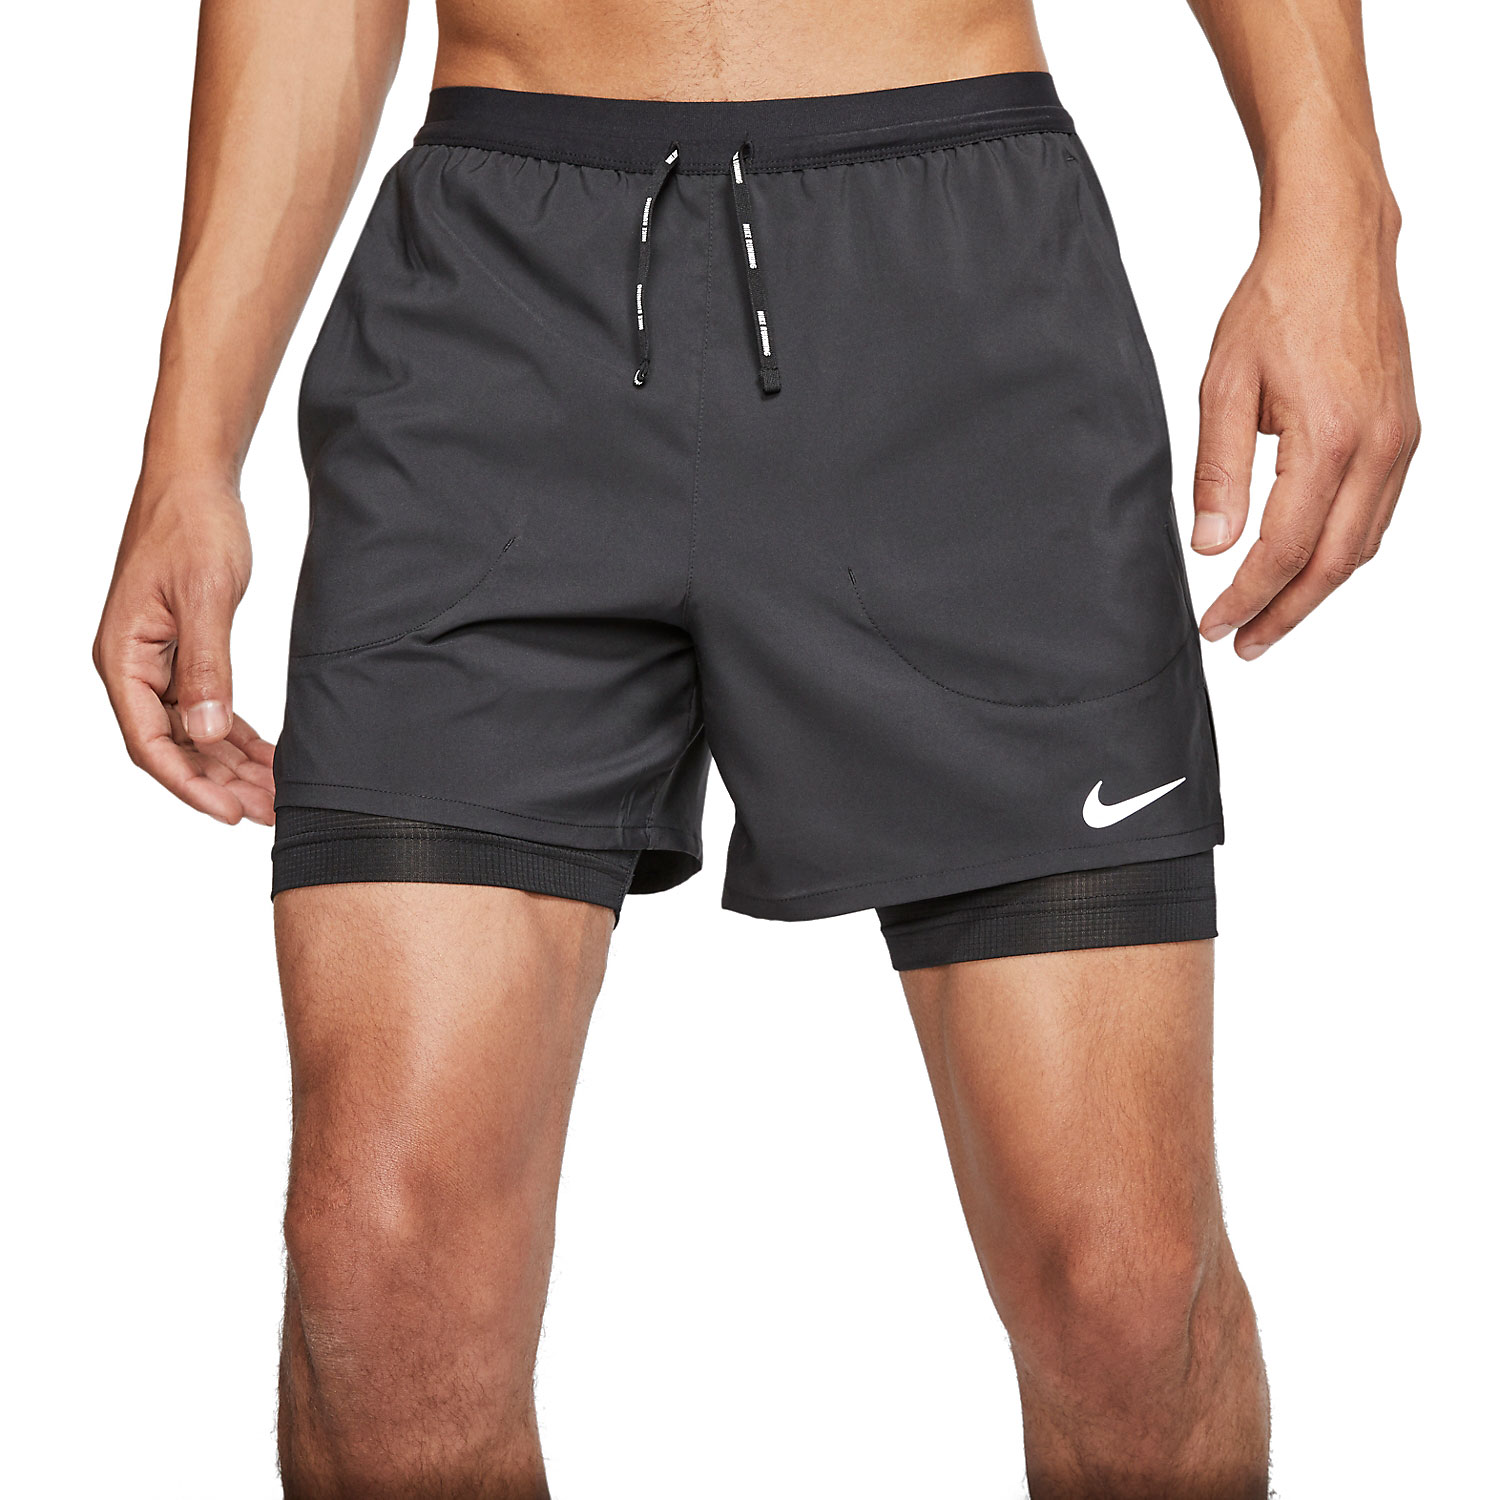 Nike Flex Stride 2 in 1 Pantaloncini da Running Uomo - Black